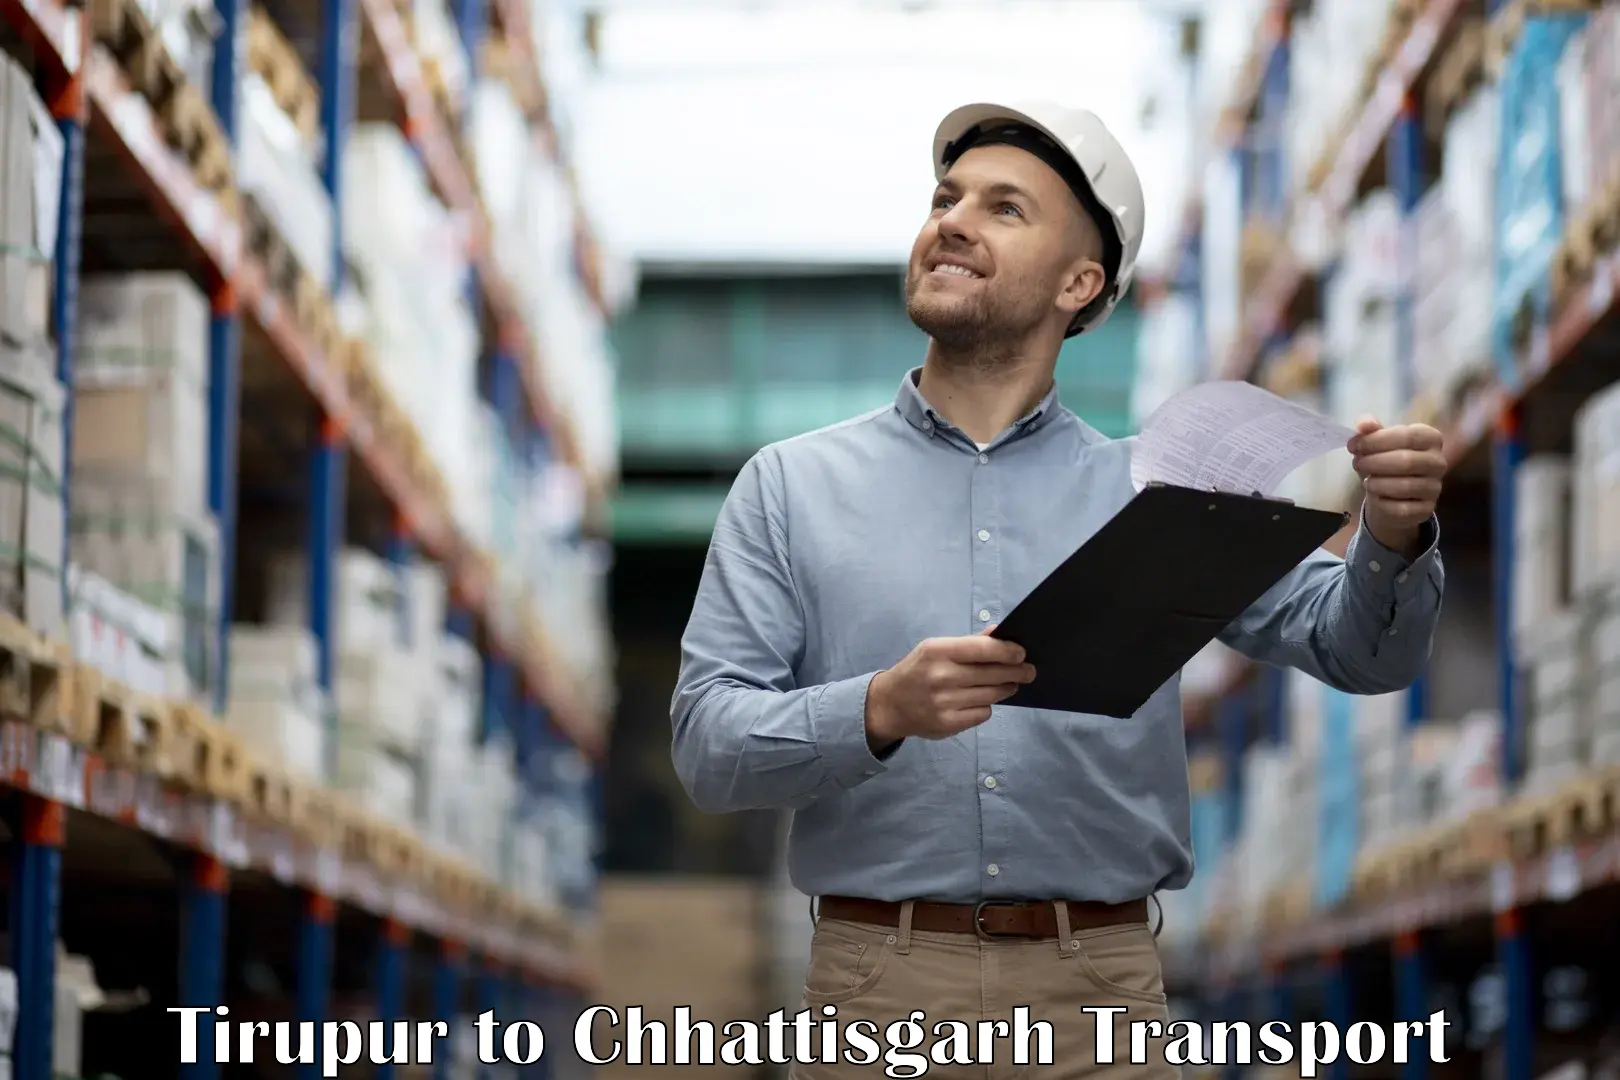 Furniture transport service Tirupur to Mandhar